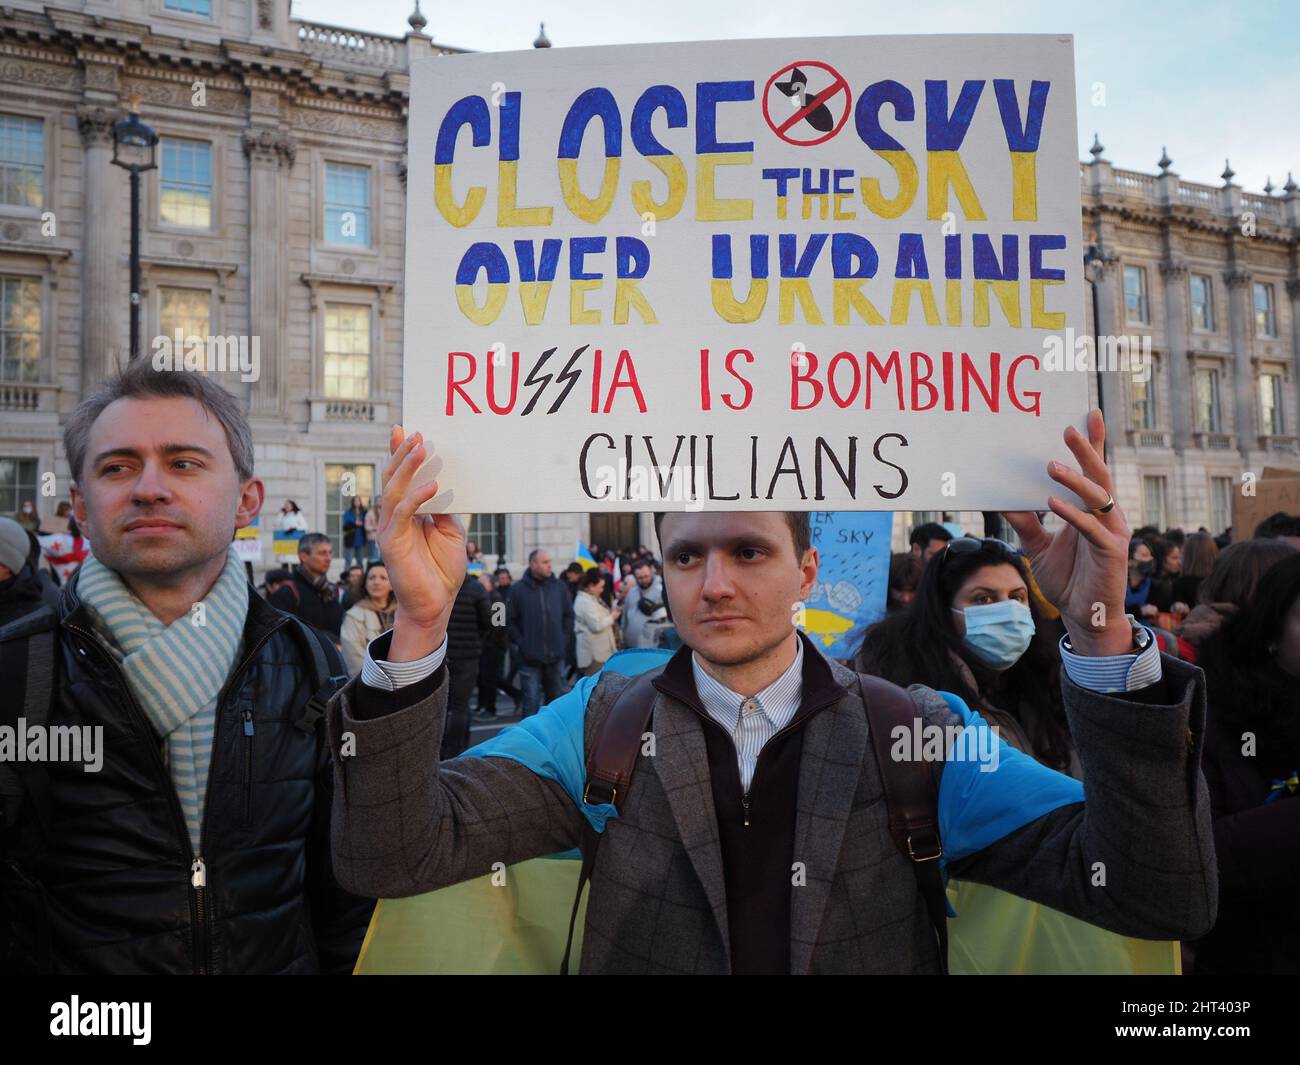 Londra.26th Febbraio 2022. Questo è il 3rd giorno dell'attacco della Russia all'UCRAINA. Grande sostegno dei londinesi per L'UCRAINA ... con gli slogan "STOP THE WAR”, Foto Stock